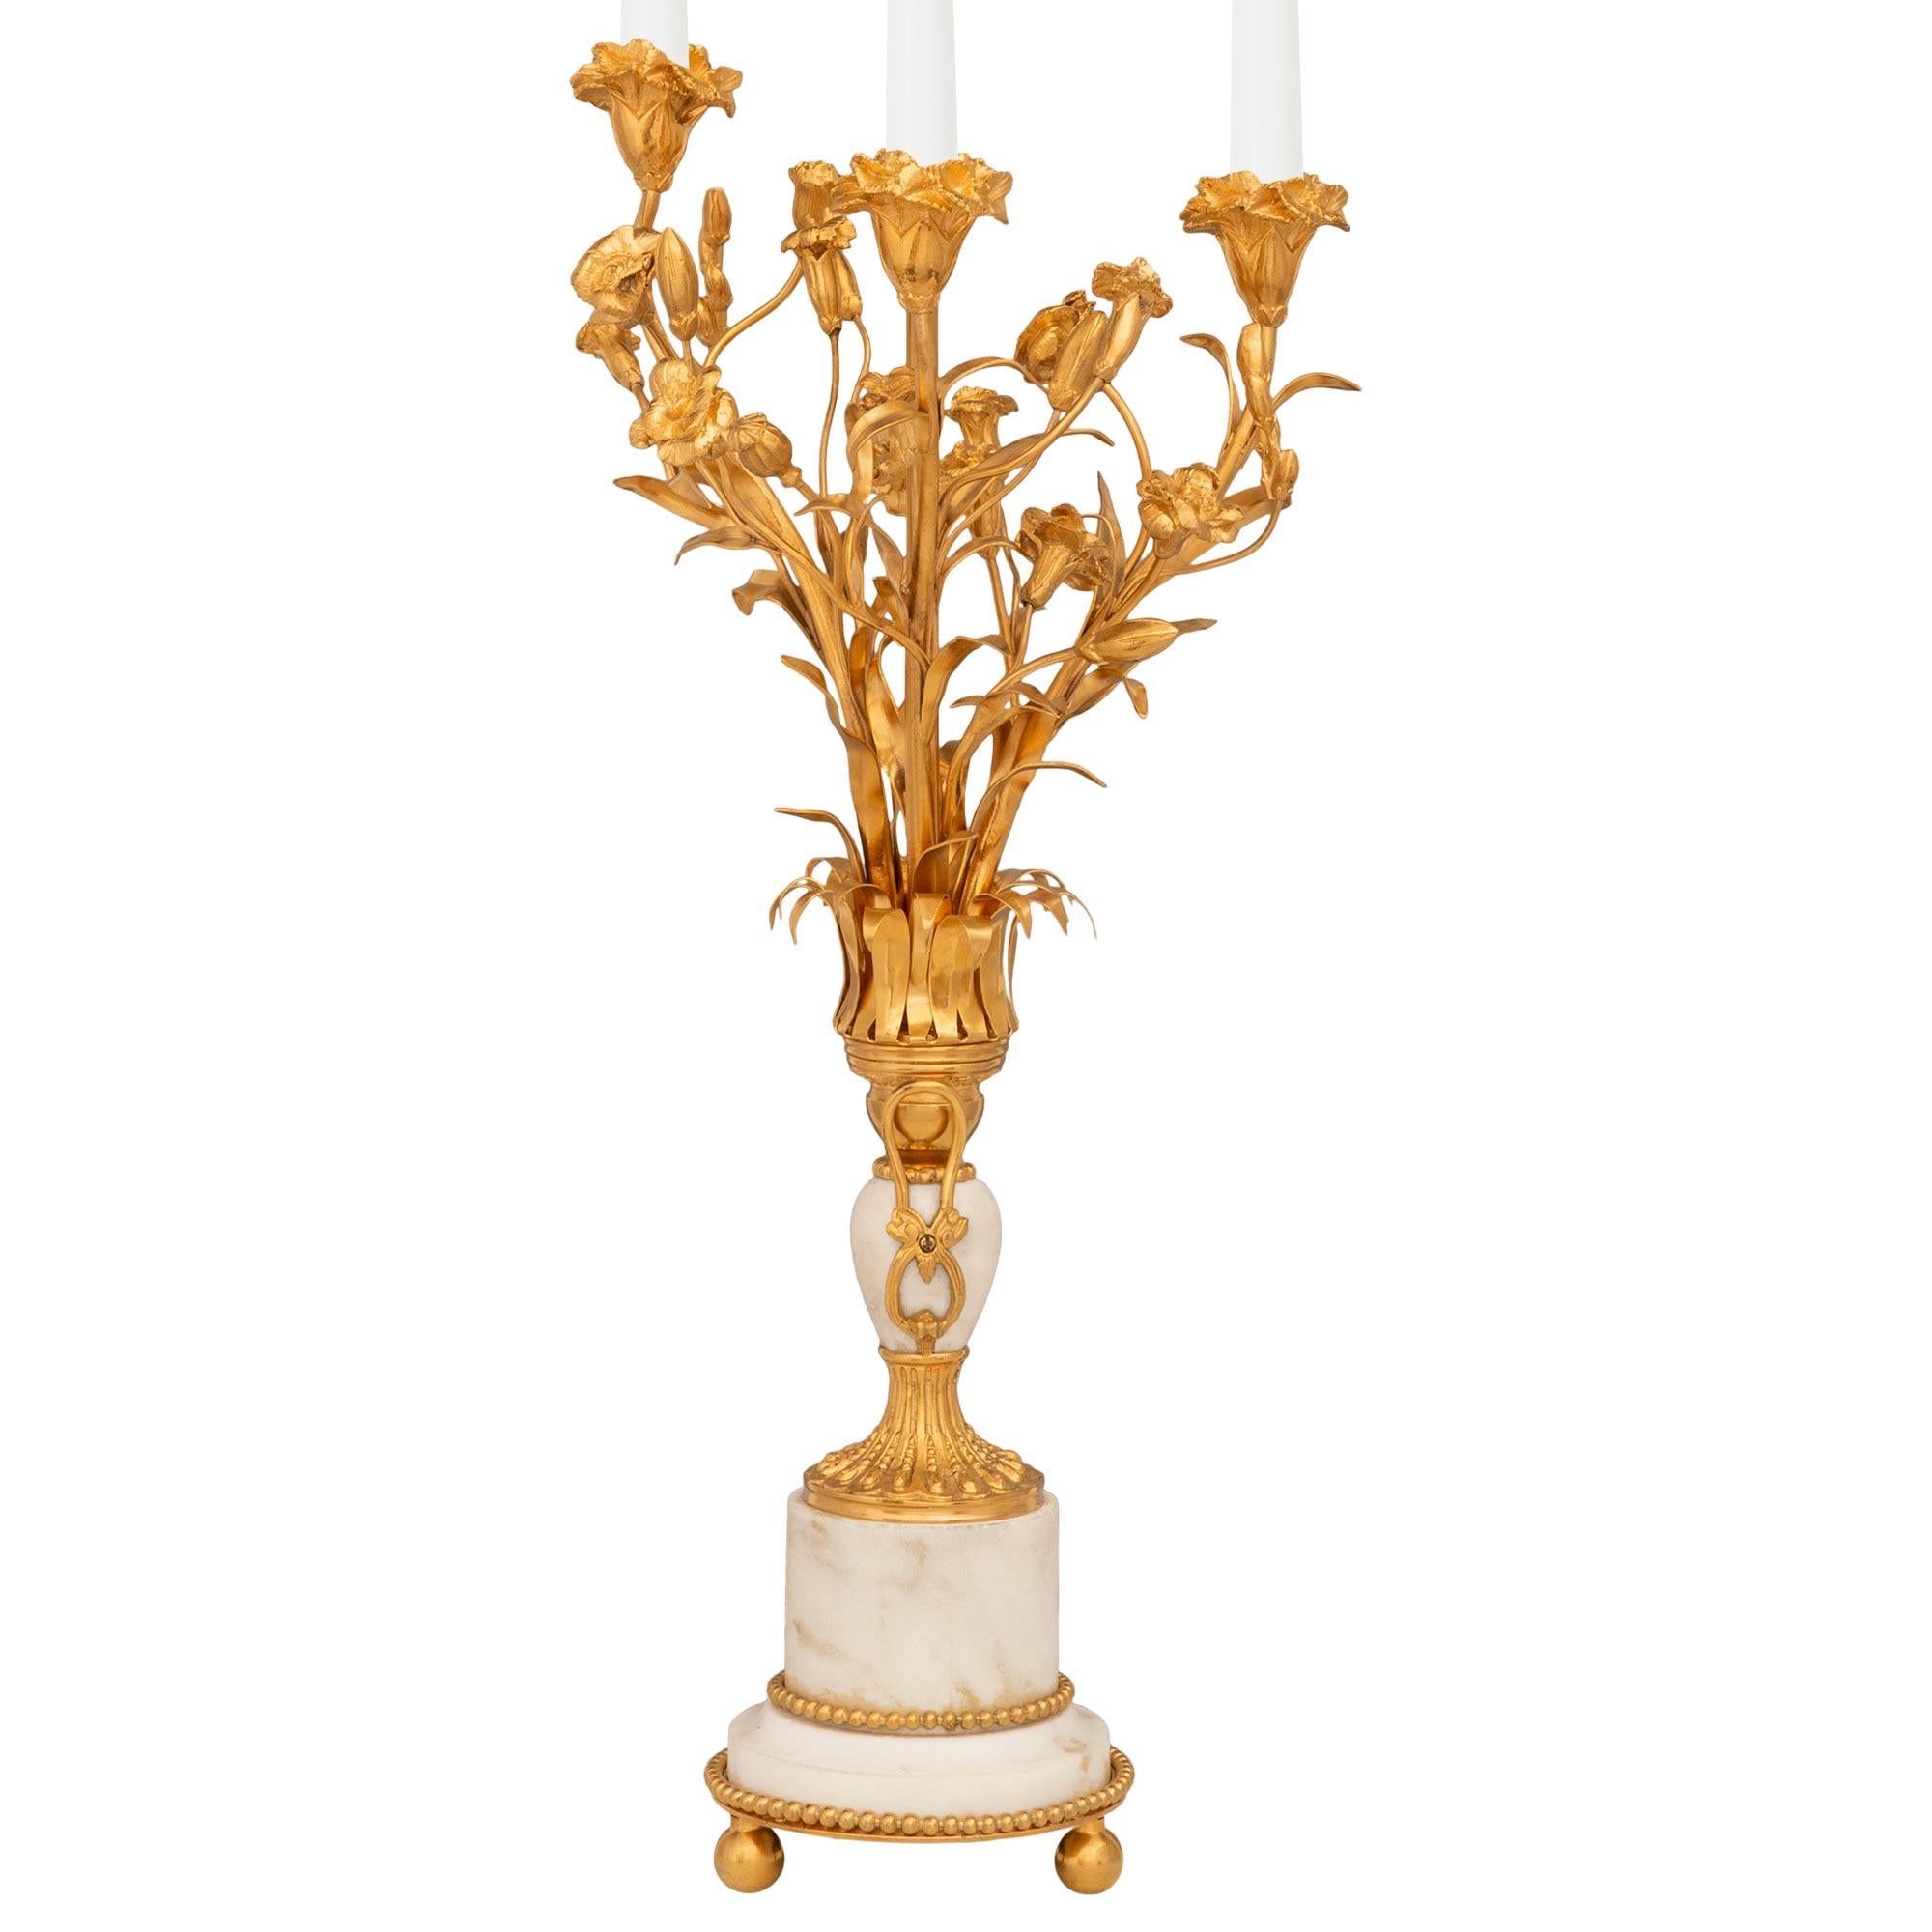 Eine atemberaubende und hohe Qualität Französisch 19. Jahrhundert Louis XVI st. Ormolu und weißem Carrara-Marmor Kandelaber Lampen. Jeder der auffälligen Kandelaber wird von drei Kugelfüßen unter einer Ormolu-Sockelplatte getragen, die einen